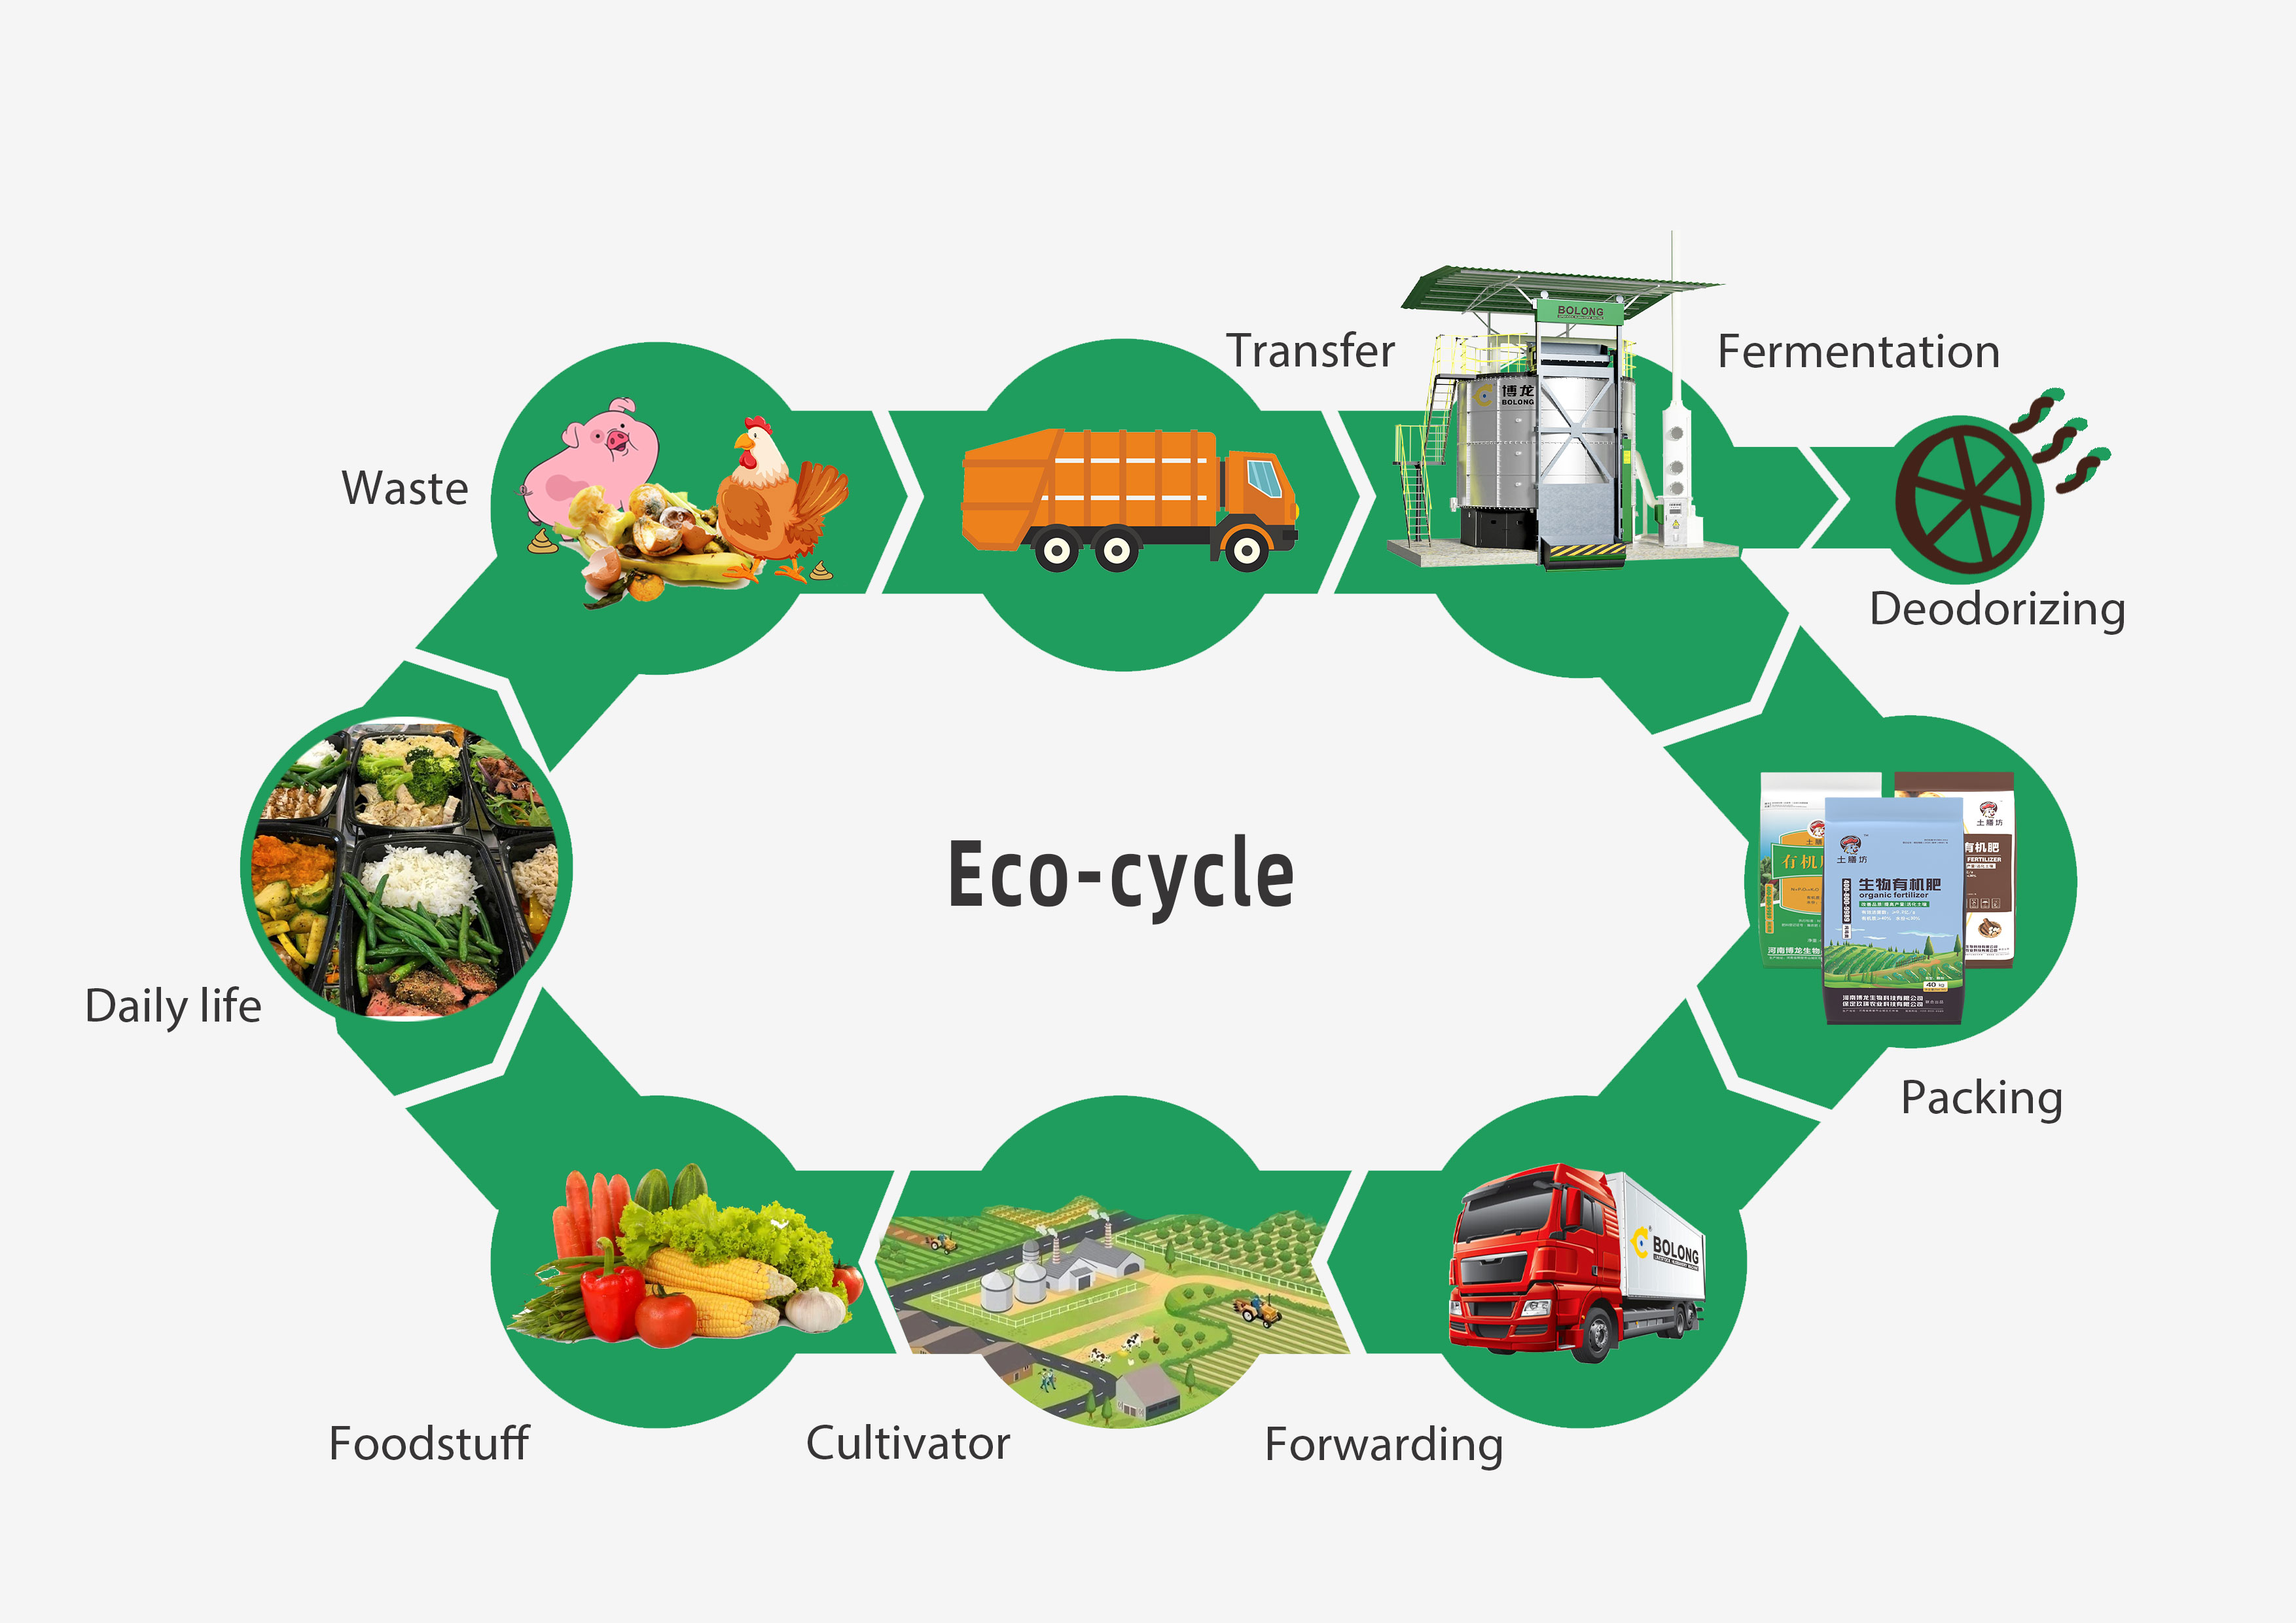 ECO-cycle